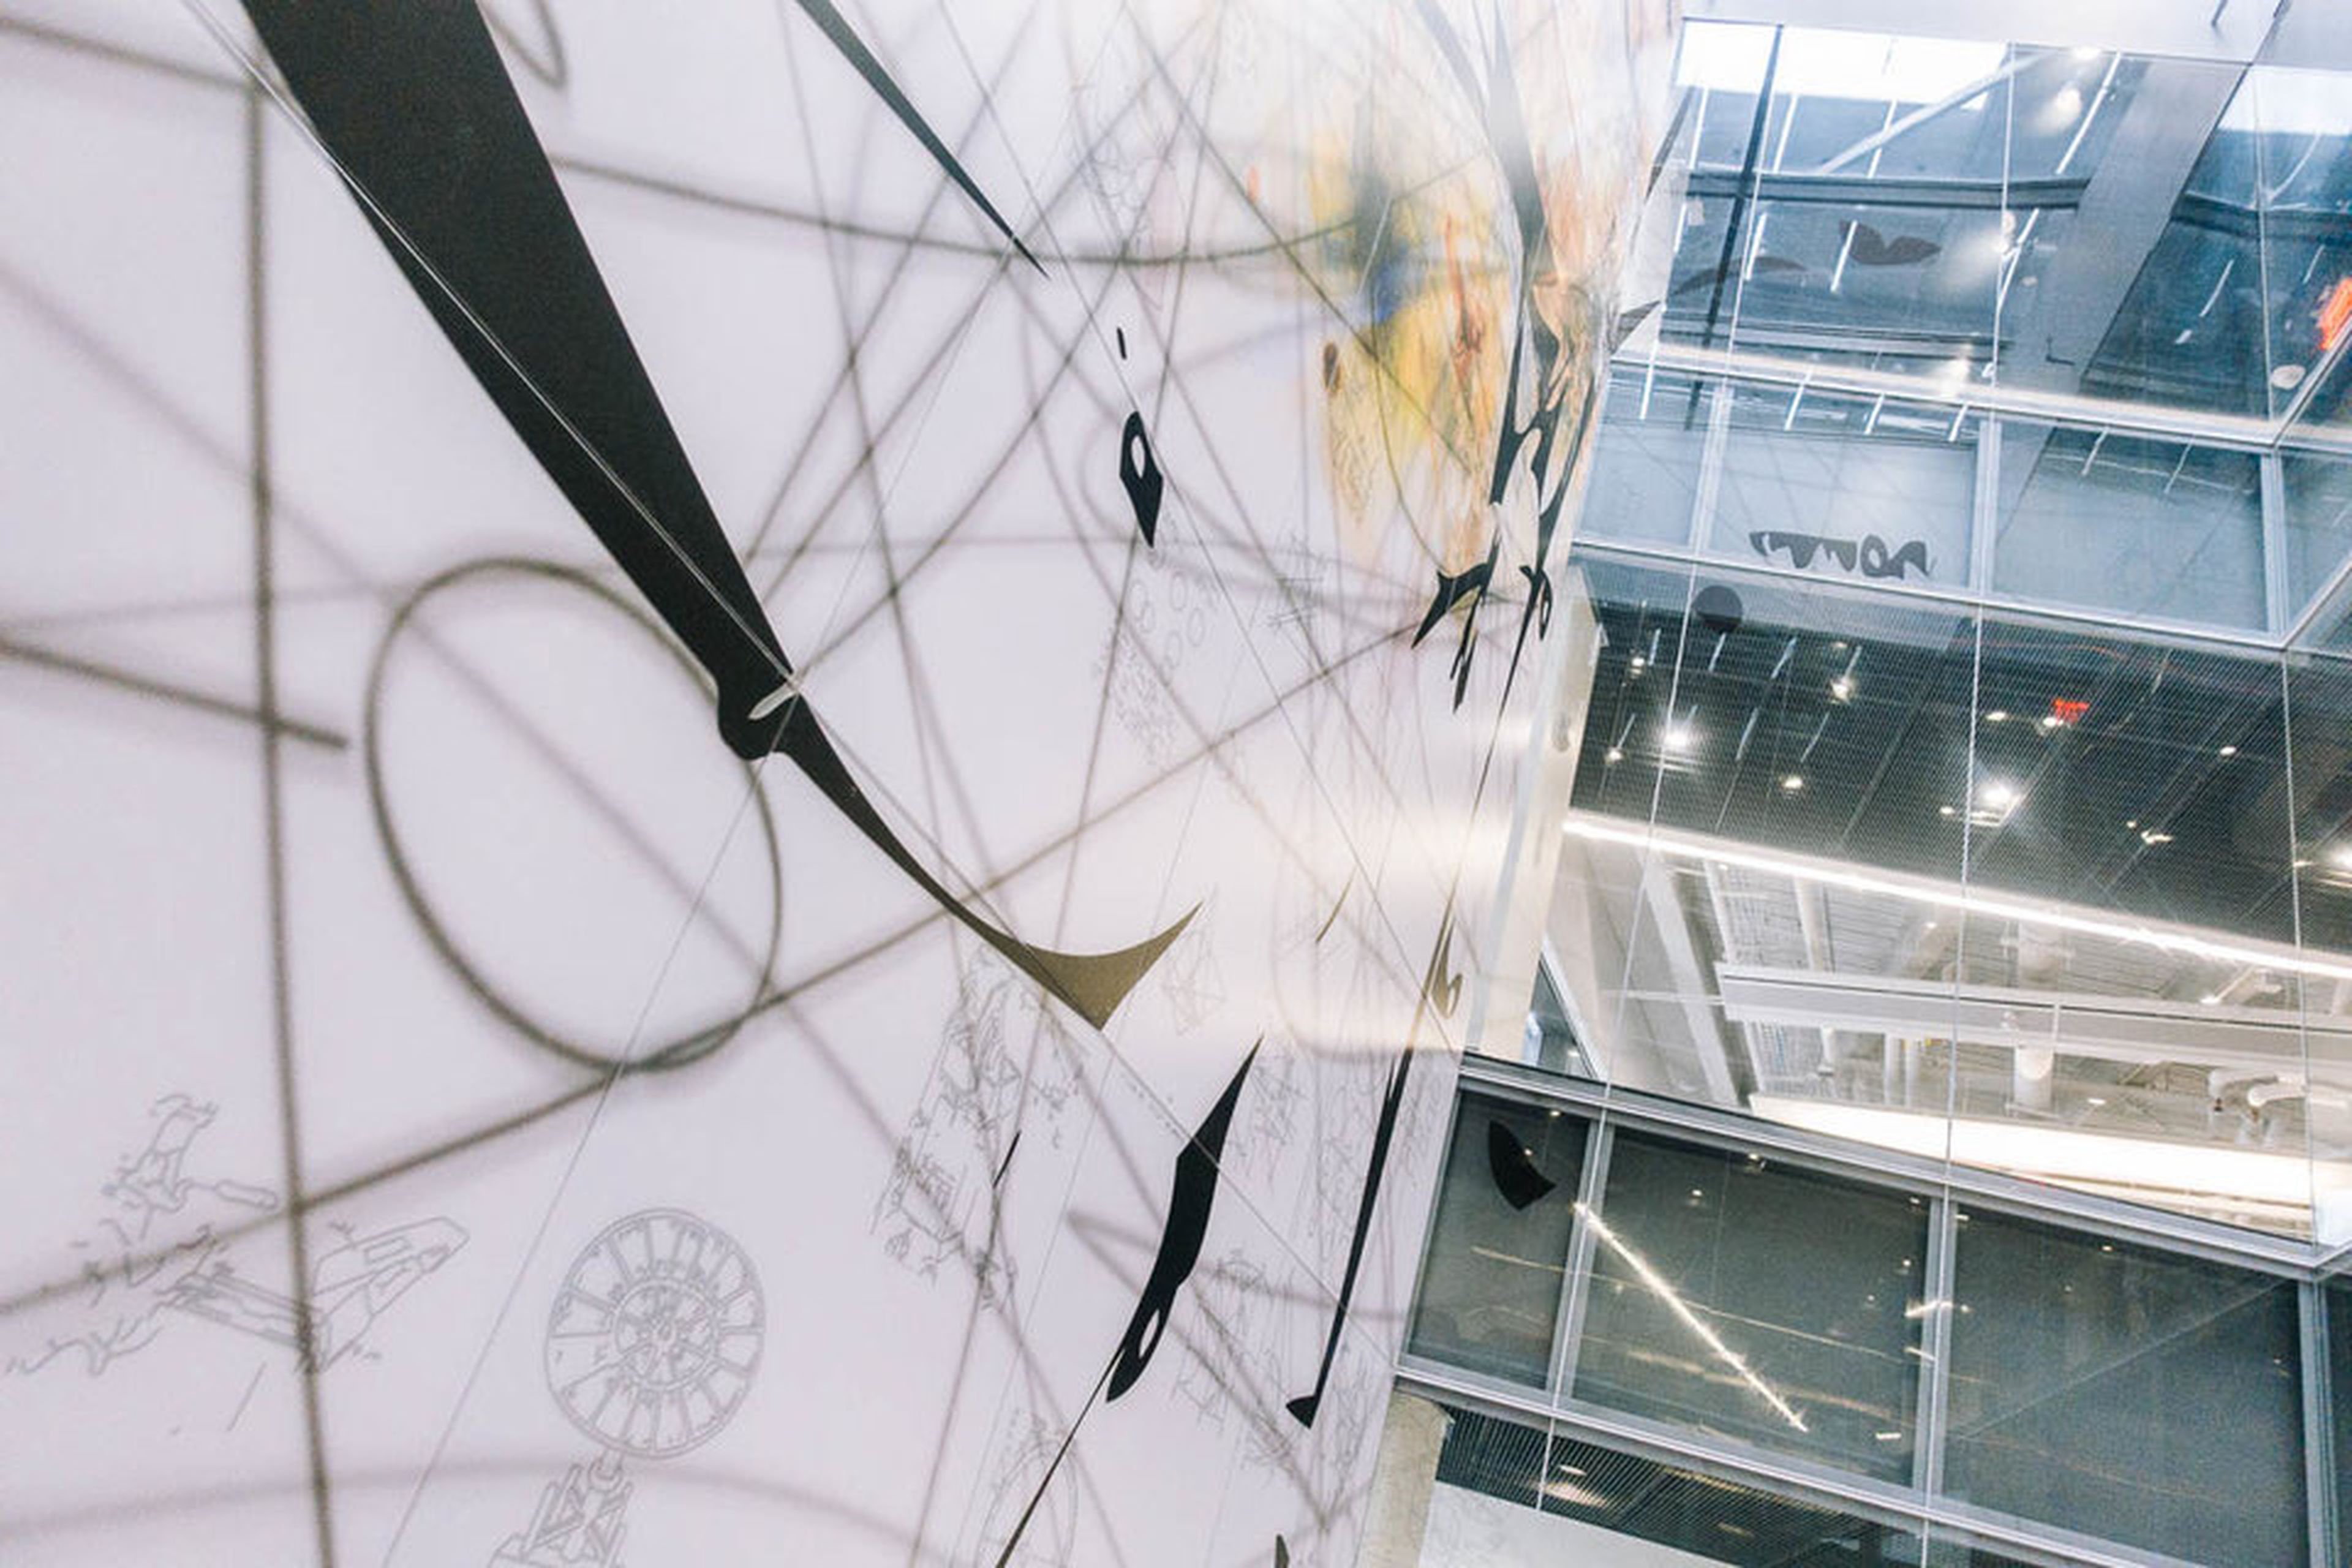 Un componente clave del diseño del Bloomberg Center es su "arte en arquitectura". Esta instalación de Matthew Ritchie llamada "Todo lo que se levanta debe converger" domina el atrio de cuatro pisos.